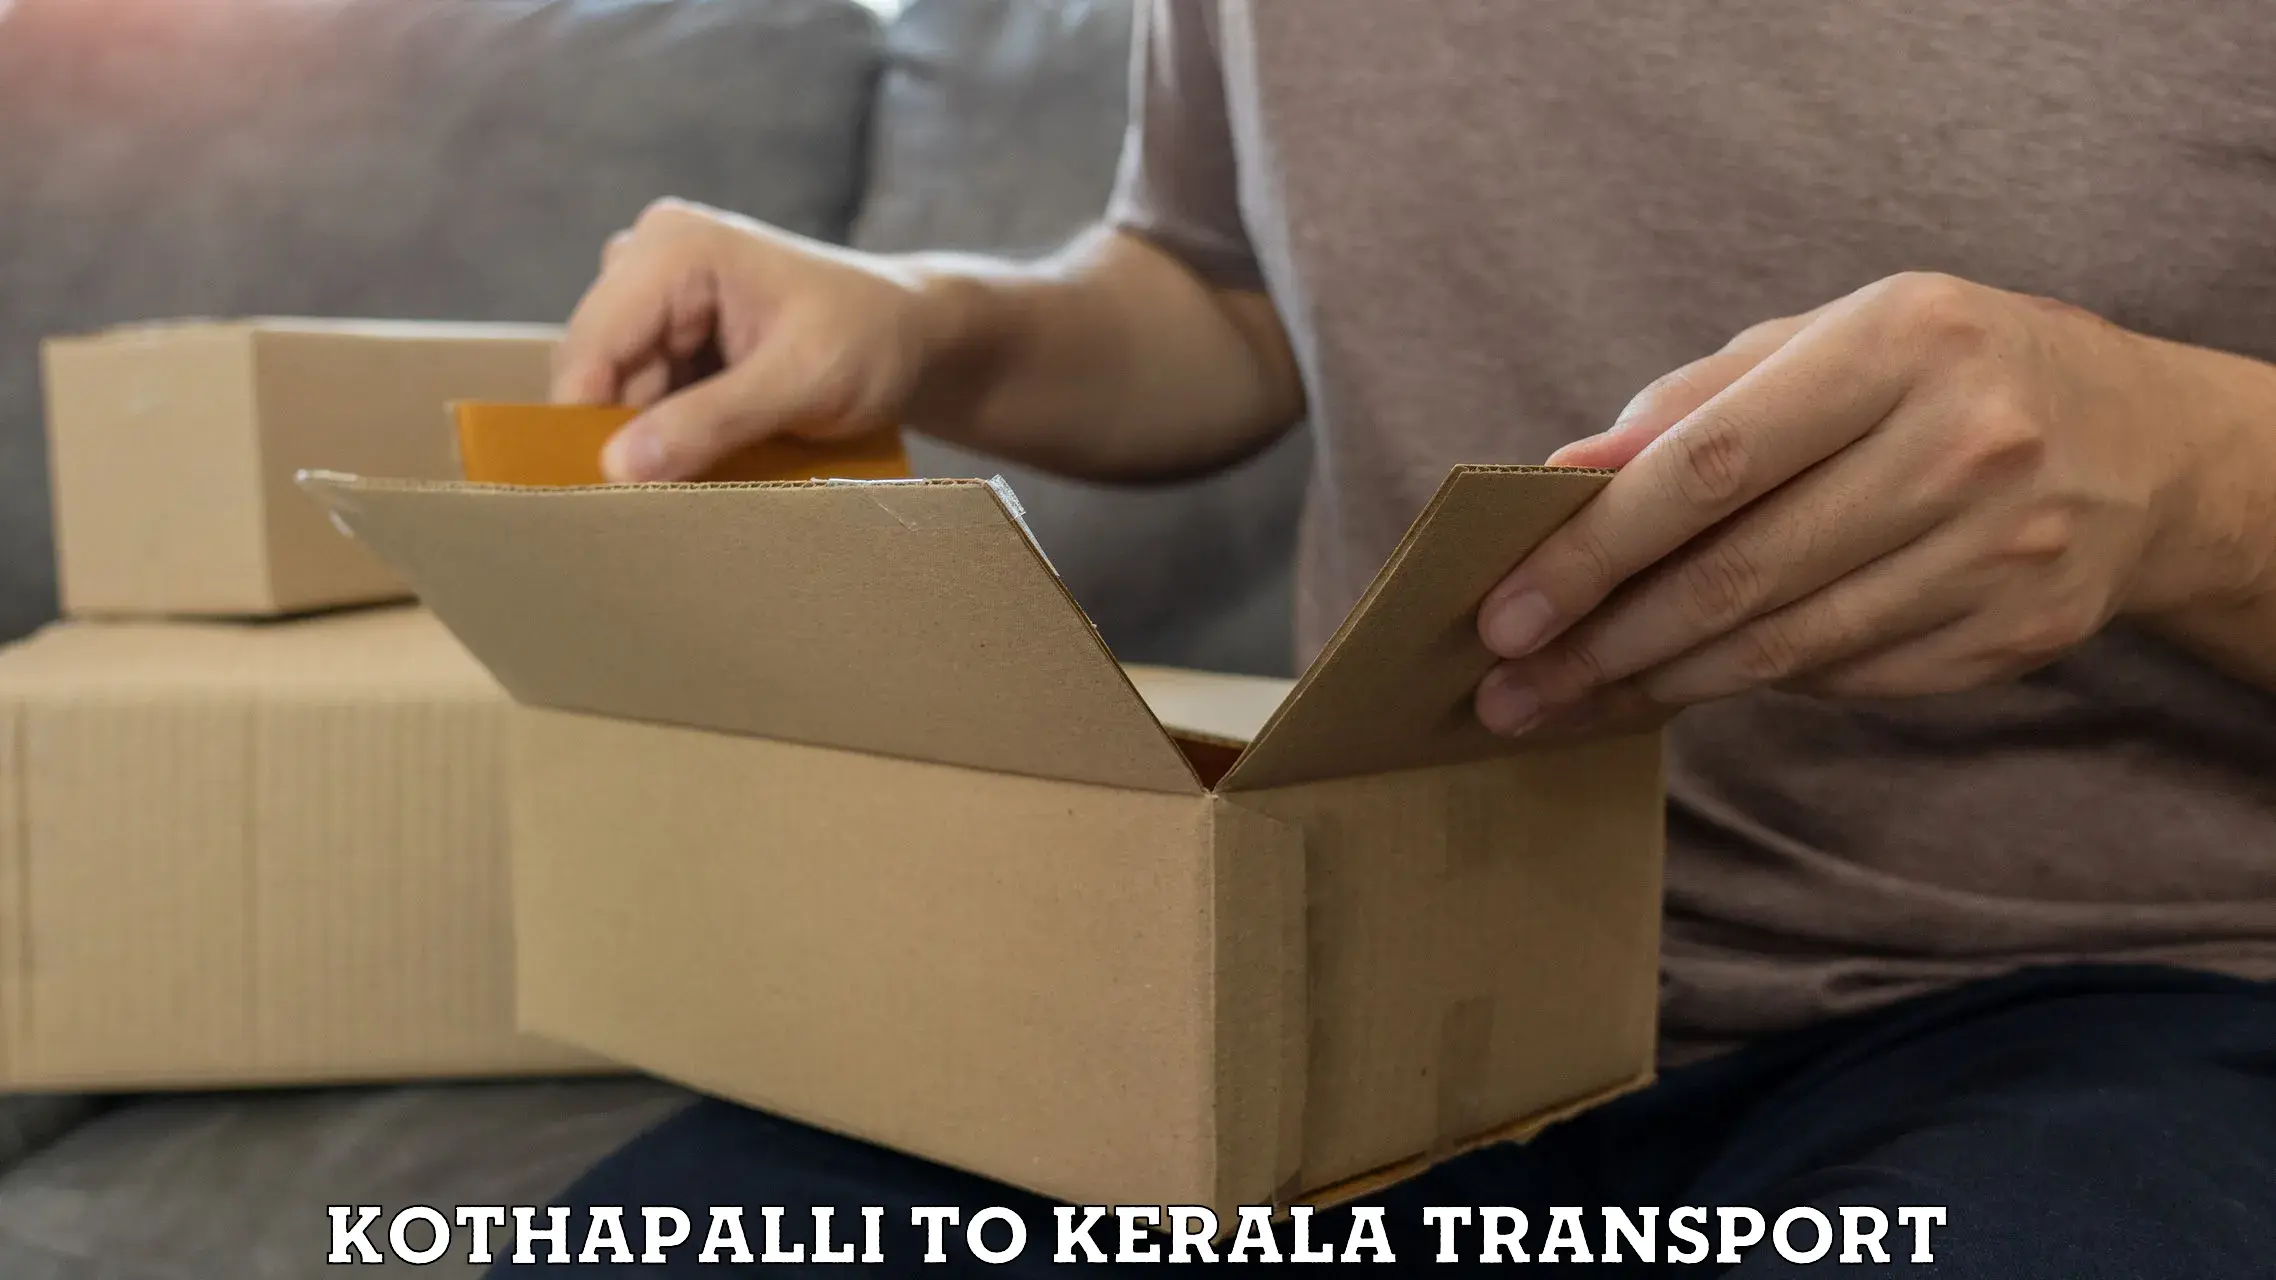 Road transport online services Kothapalli to Nileshwar